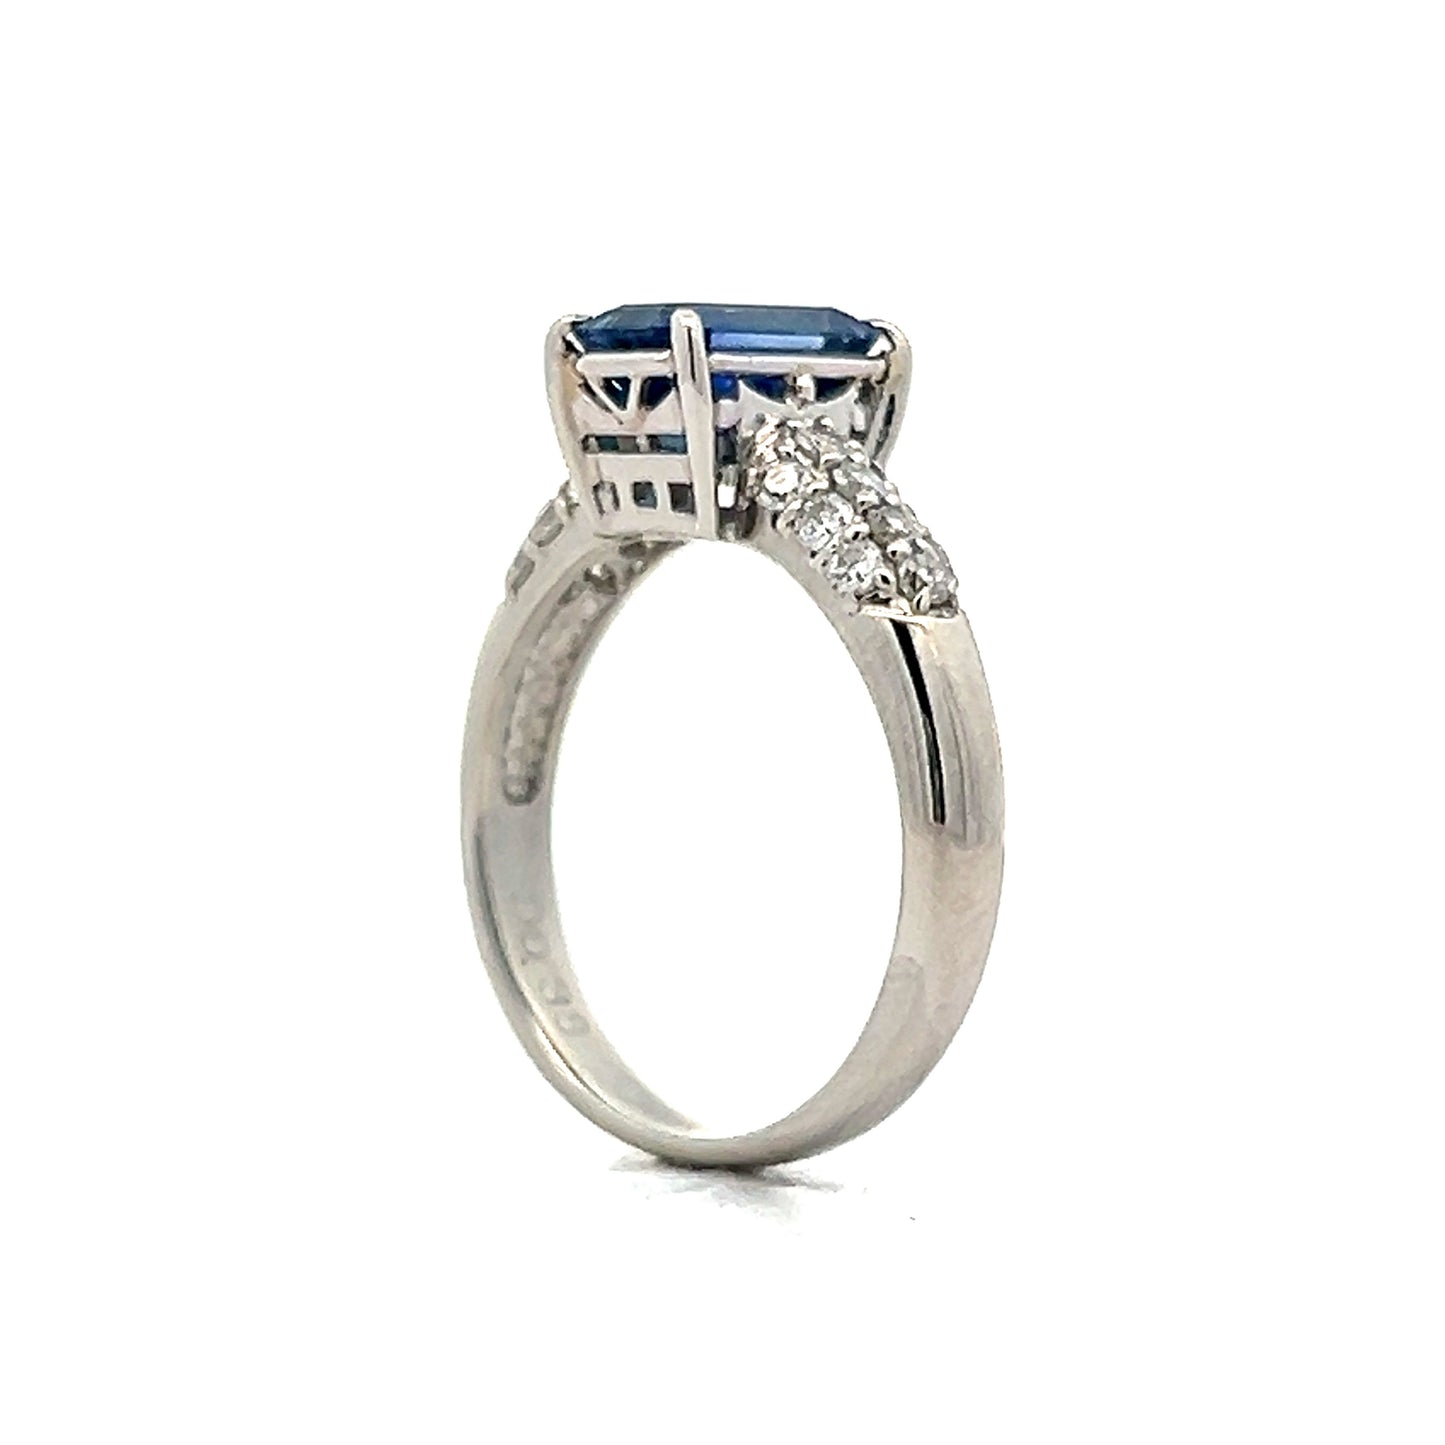 1.77 Emerald Cut Sapphire Engagement Ring in Platinum